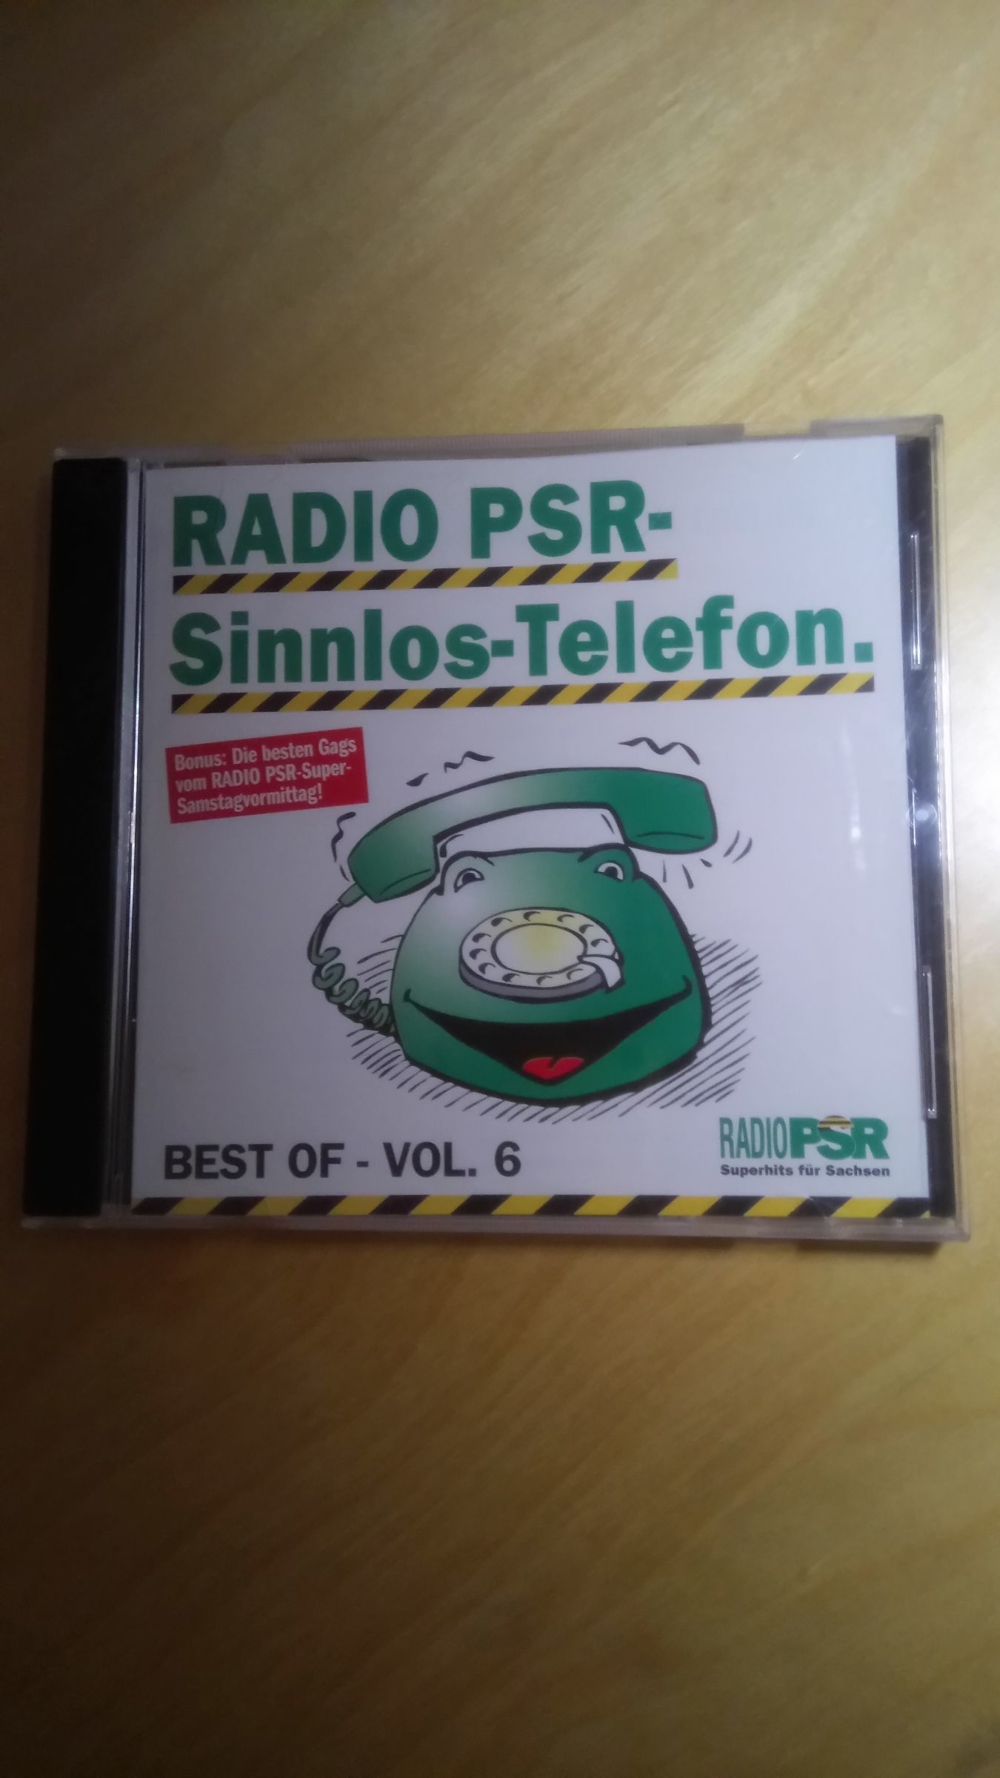 Radio PSR-Sinnlos-Telefon (Best of - Vol.6)